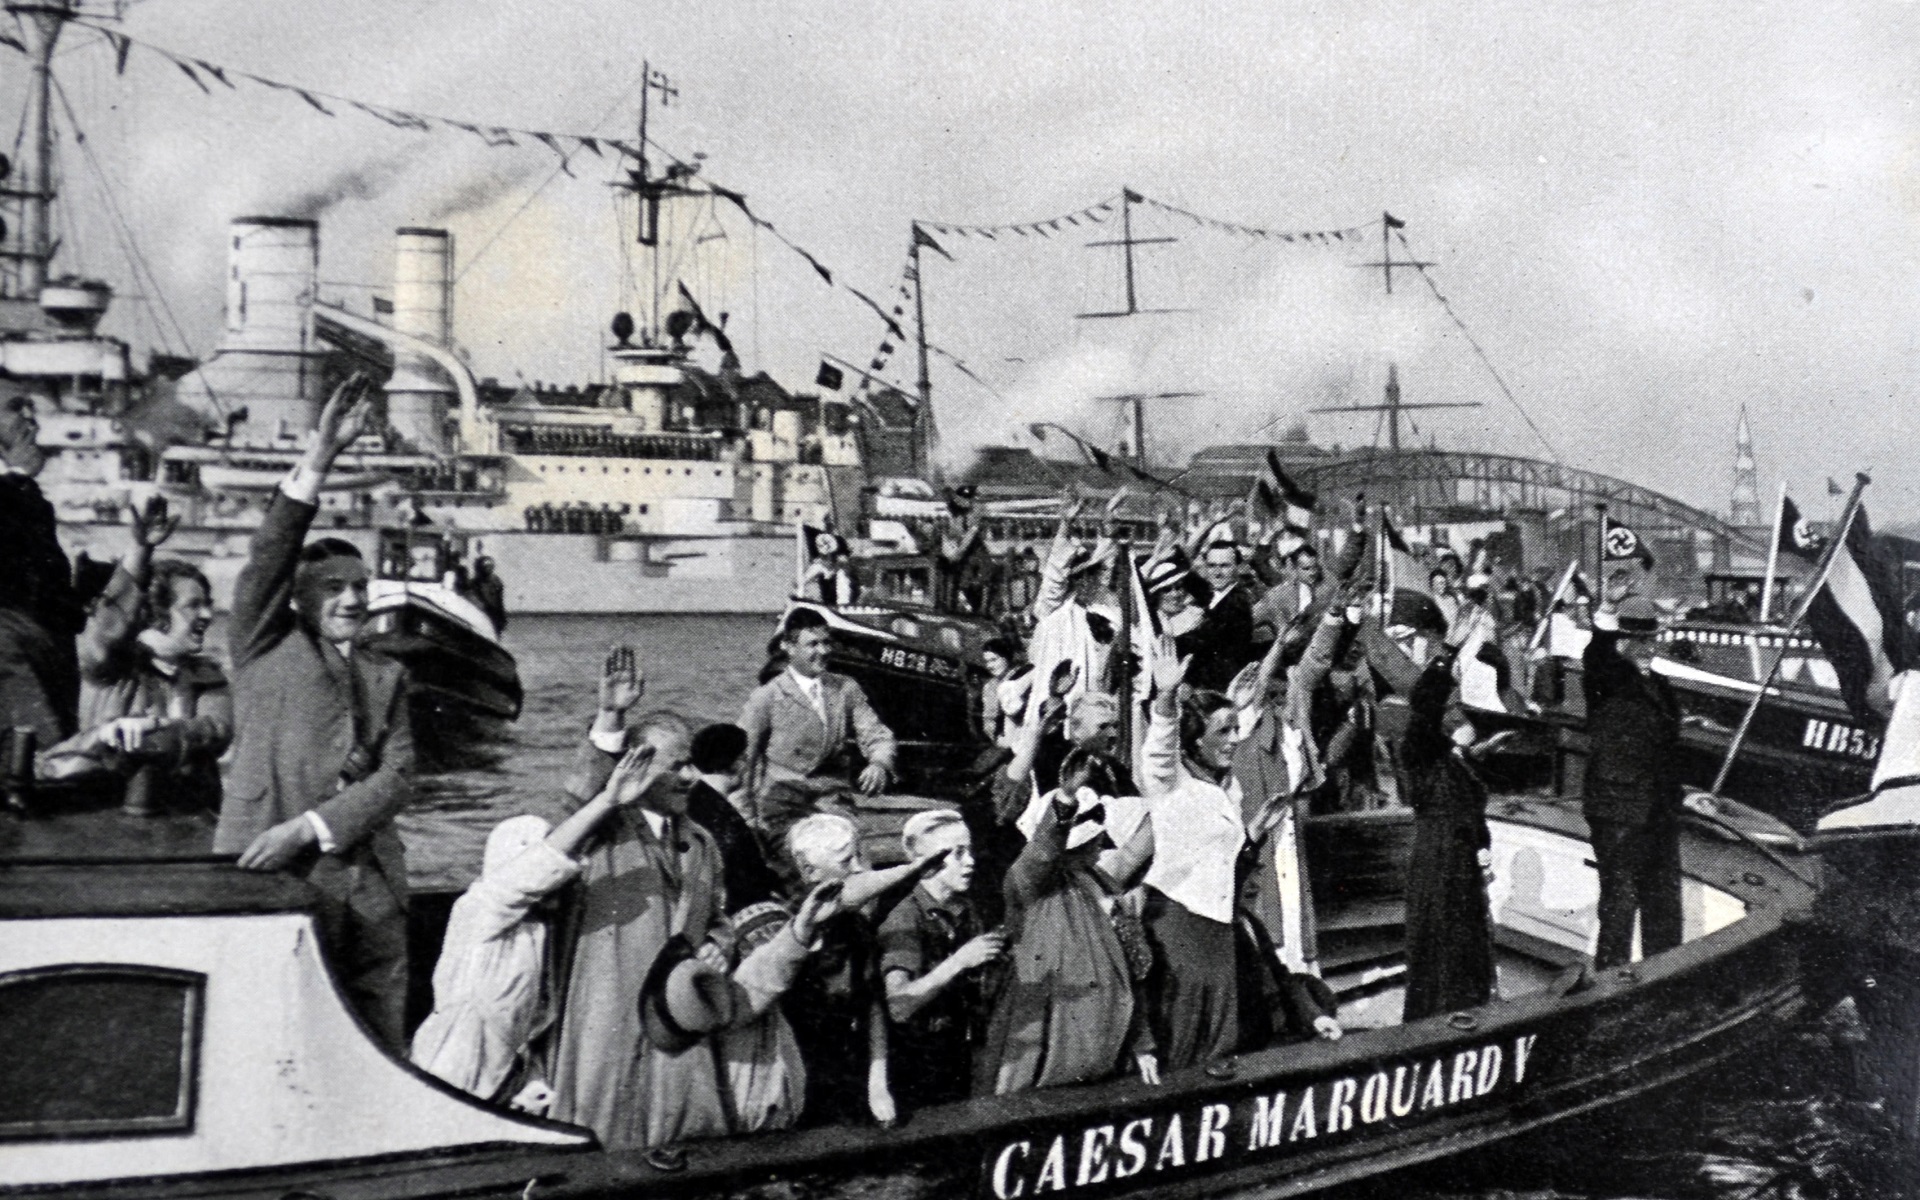 Zu sehen sind jubelnde Menschen auf einem Boot, welches die Aufschrift "Caesar Marquard V" trägt. Im Hintergrund fahren weitere Schiffe, die Umrisse des Hamburger Hafens sind zu sehen.